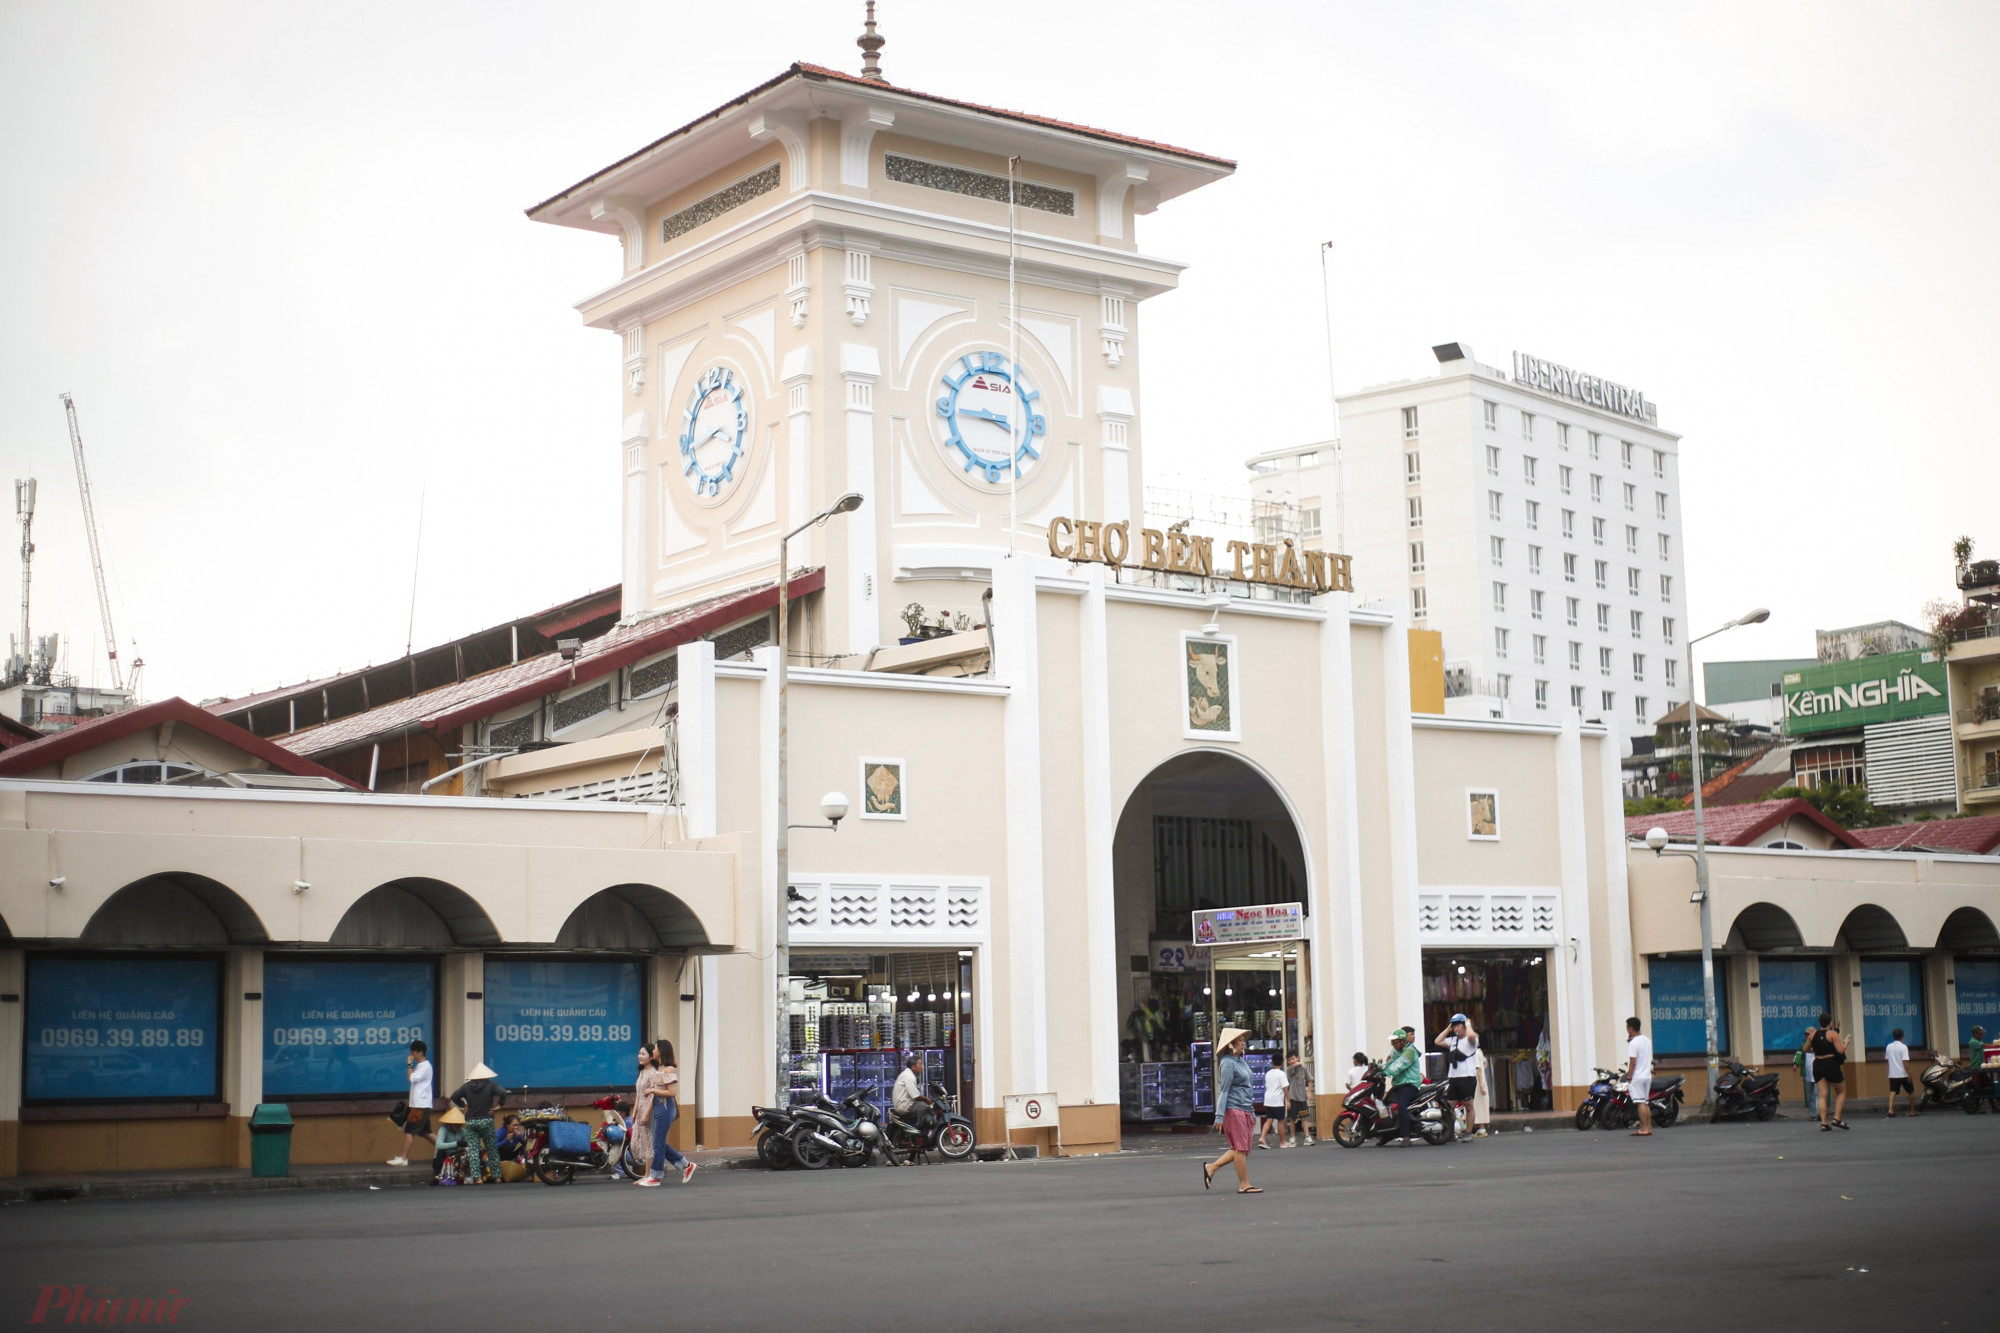 Chợ Bến Thành nằm ngay vị trí trung tâm của TP HCM, có 4 mặt tiền với 4 cửa chính: cửa Nam hướng thẳng ra Công trường Quách Thị Trang, cửa Đông ở đường Phan Bội Châu, cửa bắc trên đường Lê Thánh Tôn, cửa Tây hướng ra đường Phan Chu Trinh. 